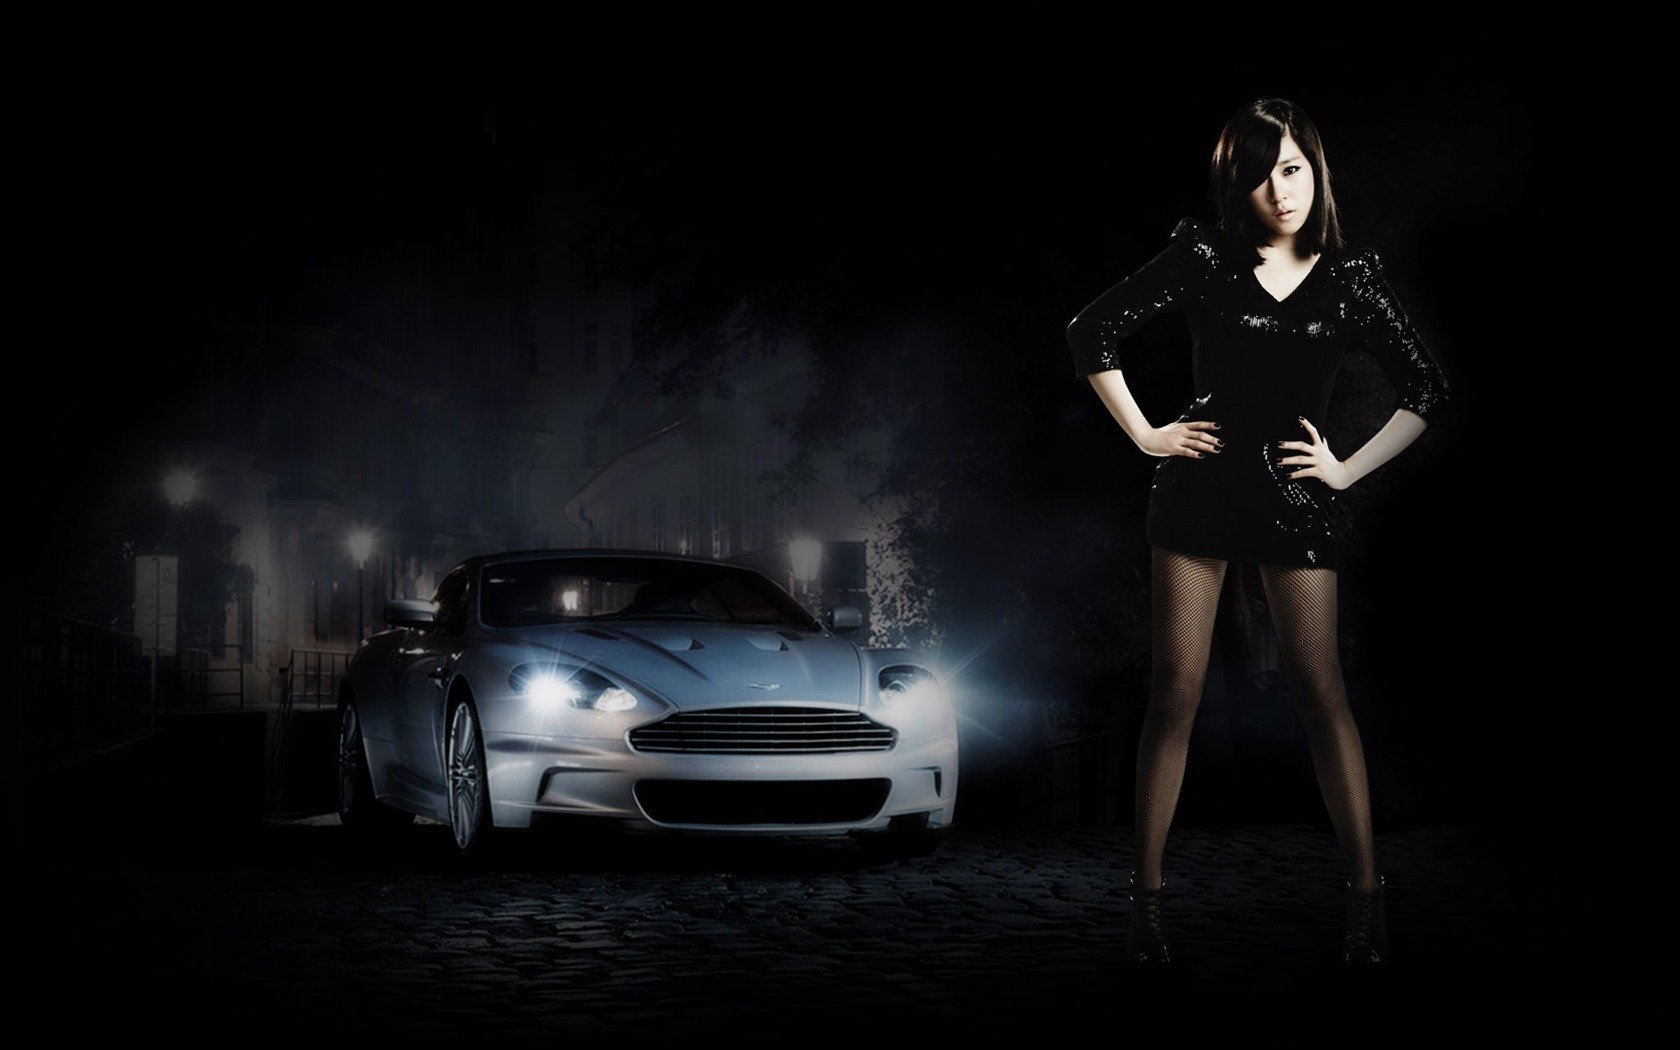 Темные обои девушек на телефон. Девушка на фоне машины. Обои девушки и машины. Девушка машина черный фон. Девушки и авто на темном фоне.